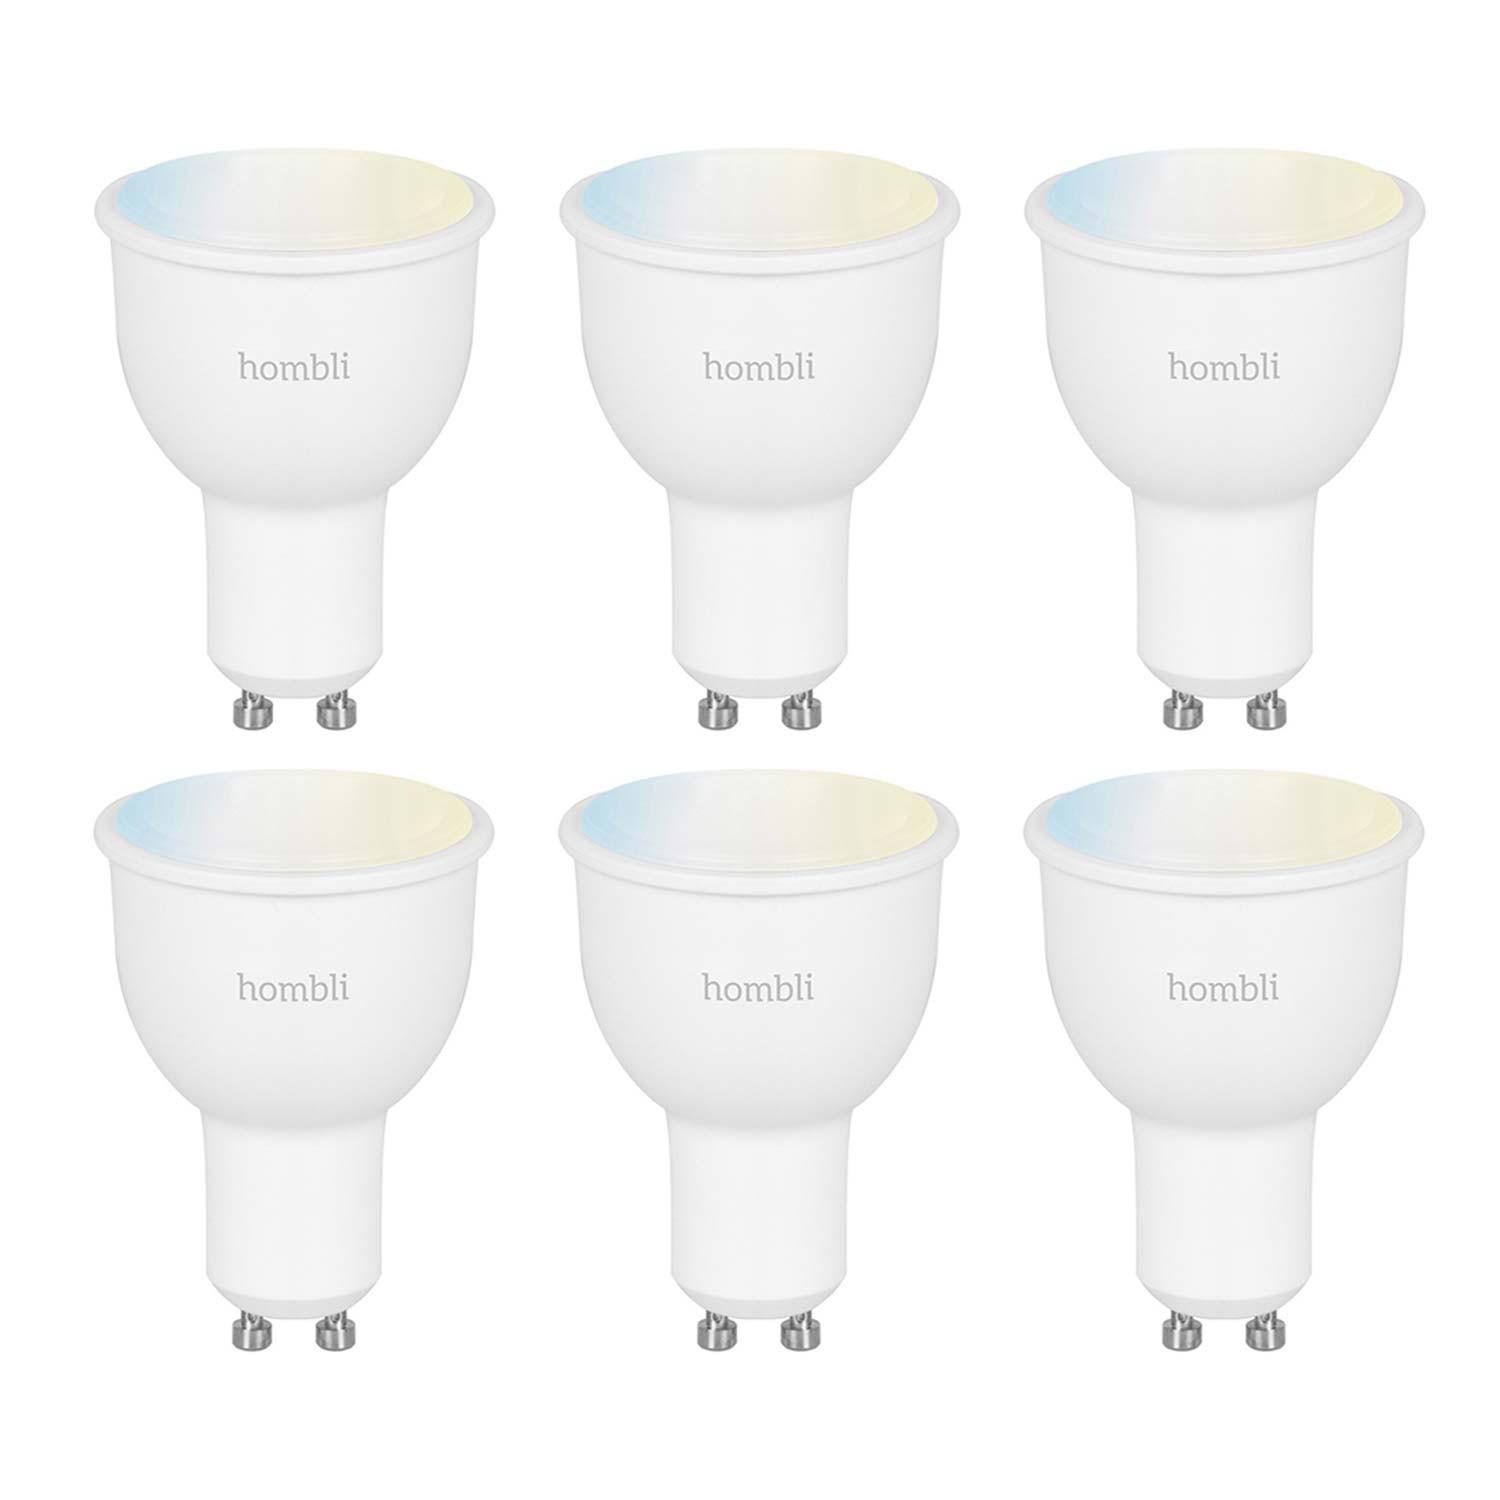 Hombli Smart Spot GU10 White-Lampe 3er-Set + gratis Smart Spot GU10 White 3er-Set